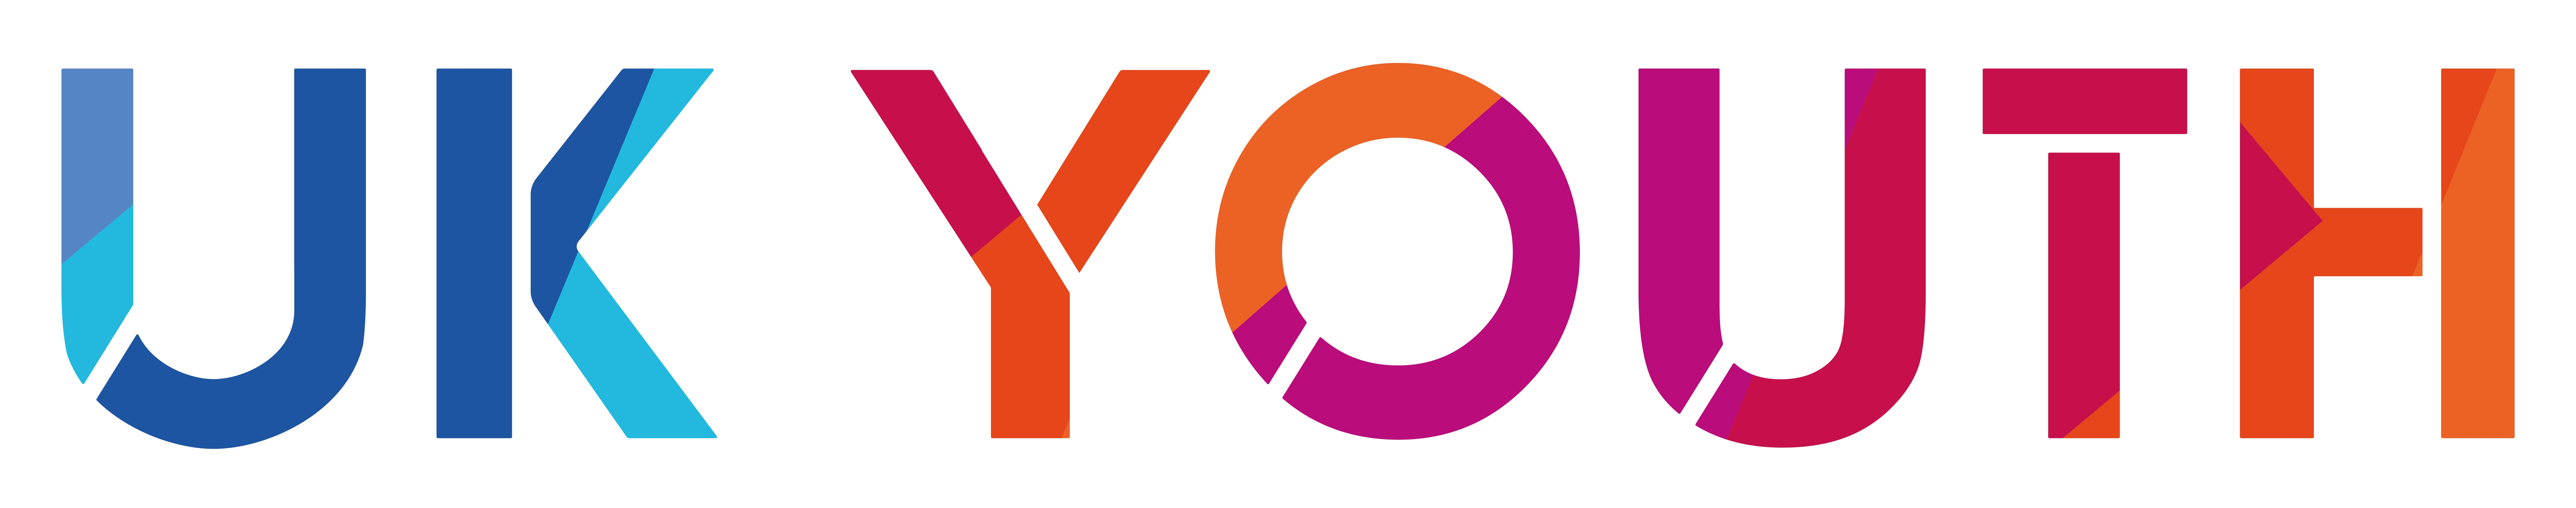 UKY logo